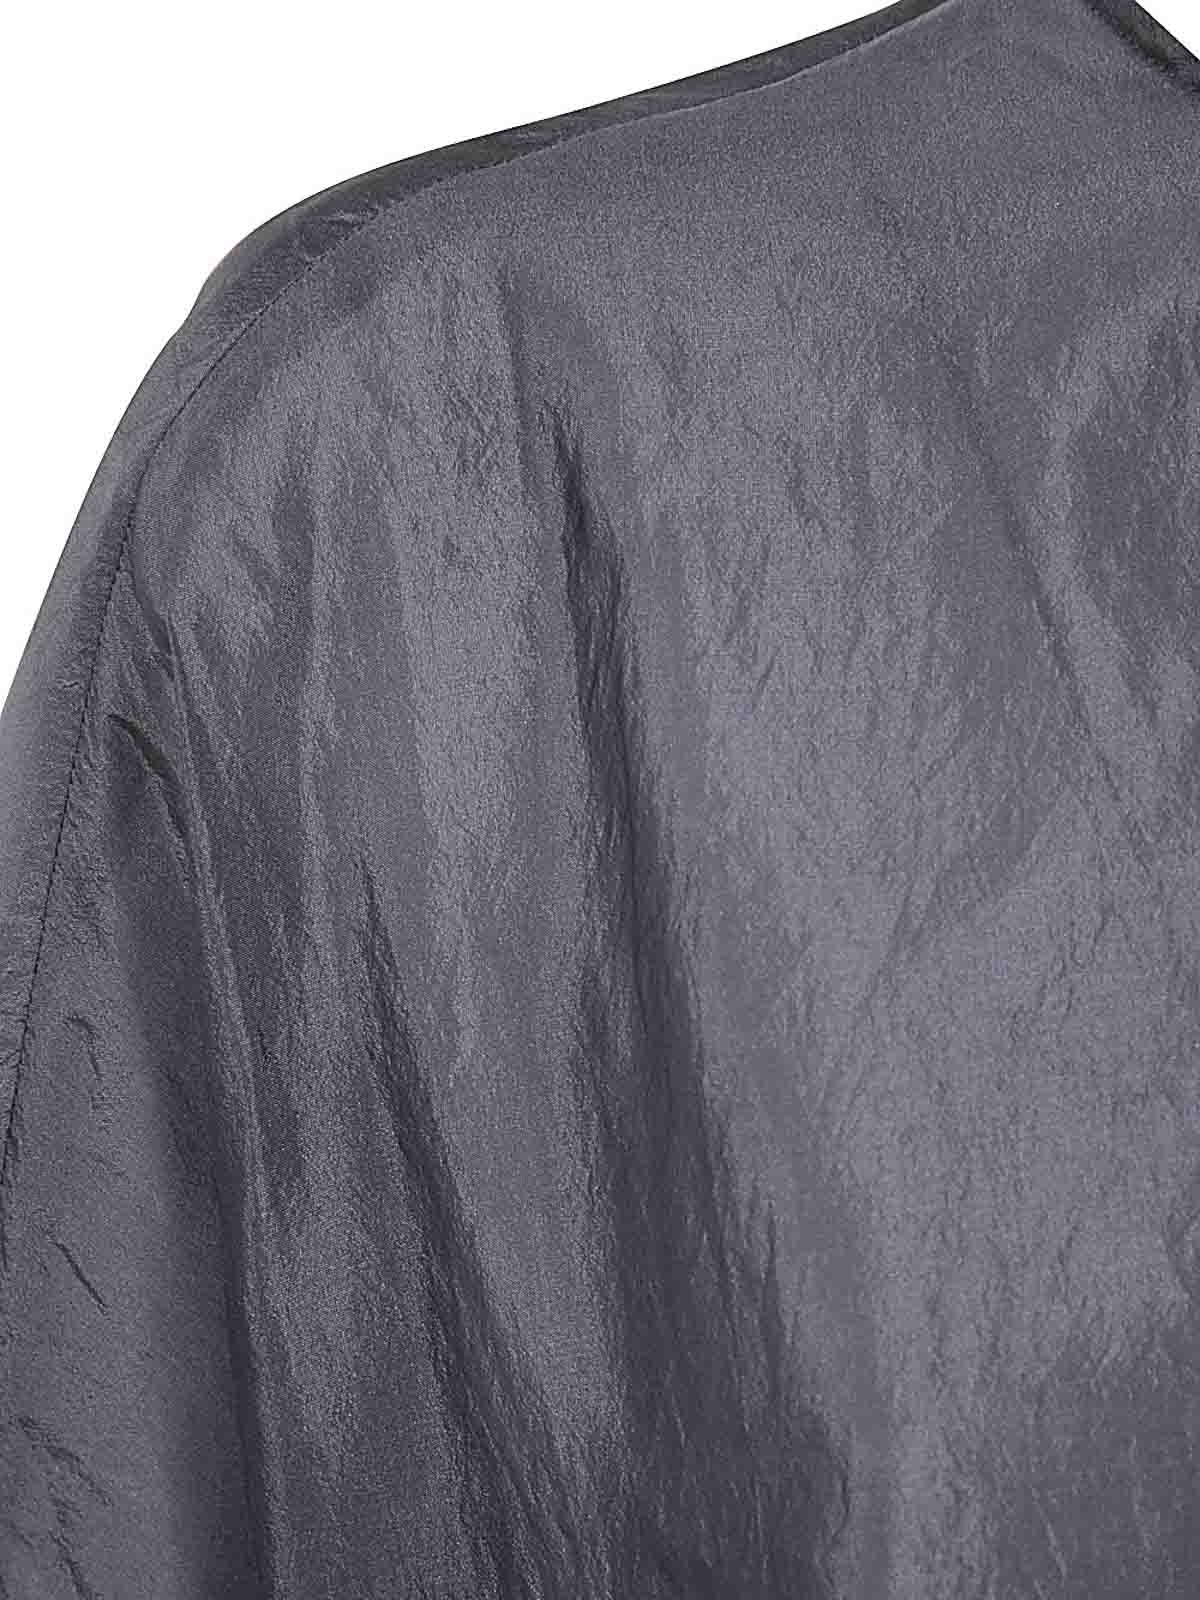 Shop Apuntob Camisa - Gris In Grey